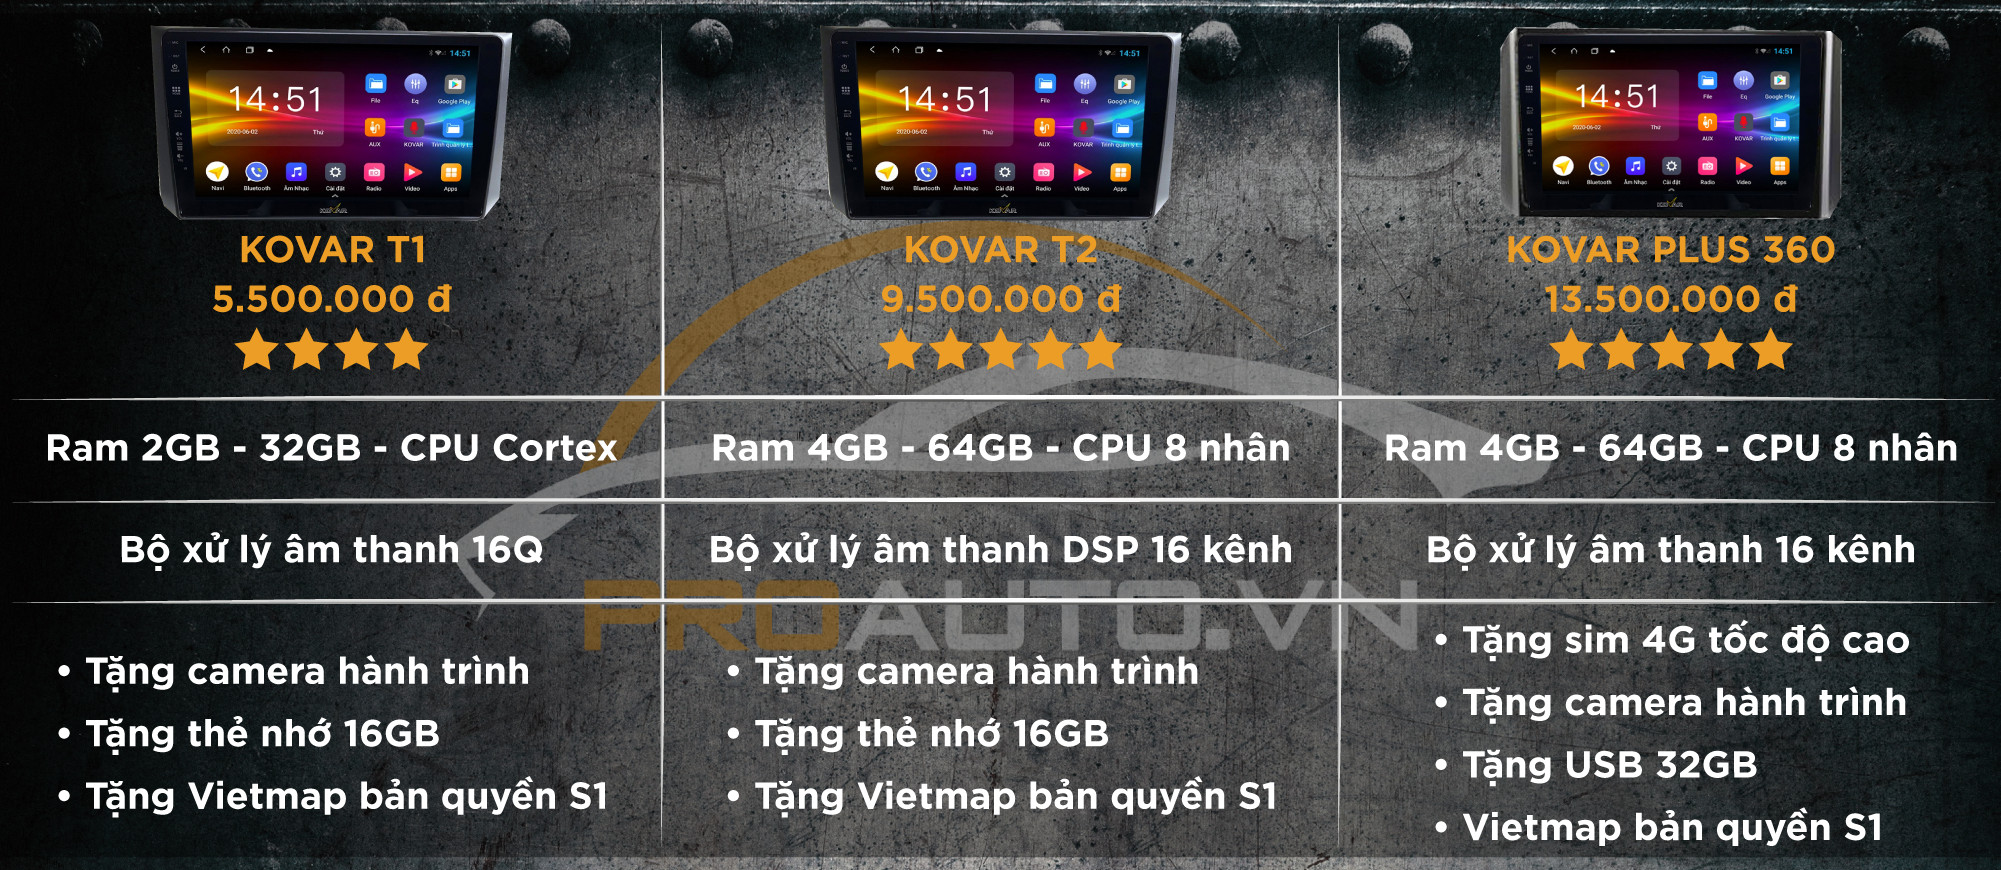 Bảng giá màn hình Android Kovar xe Huyndai Elantra